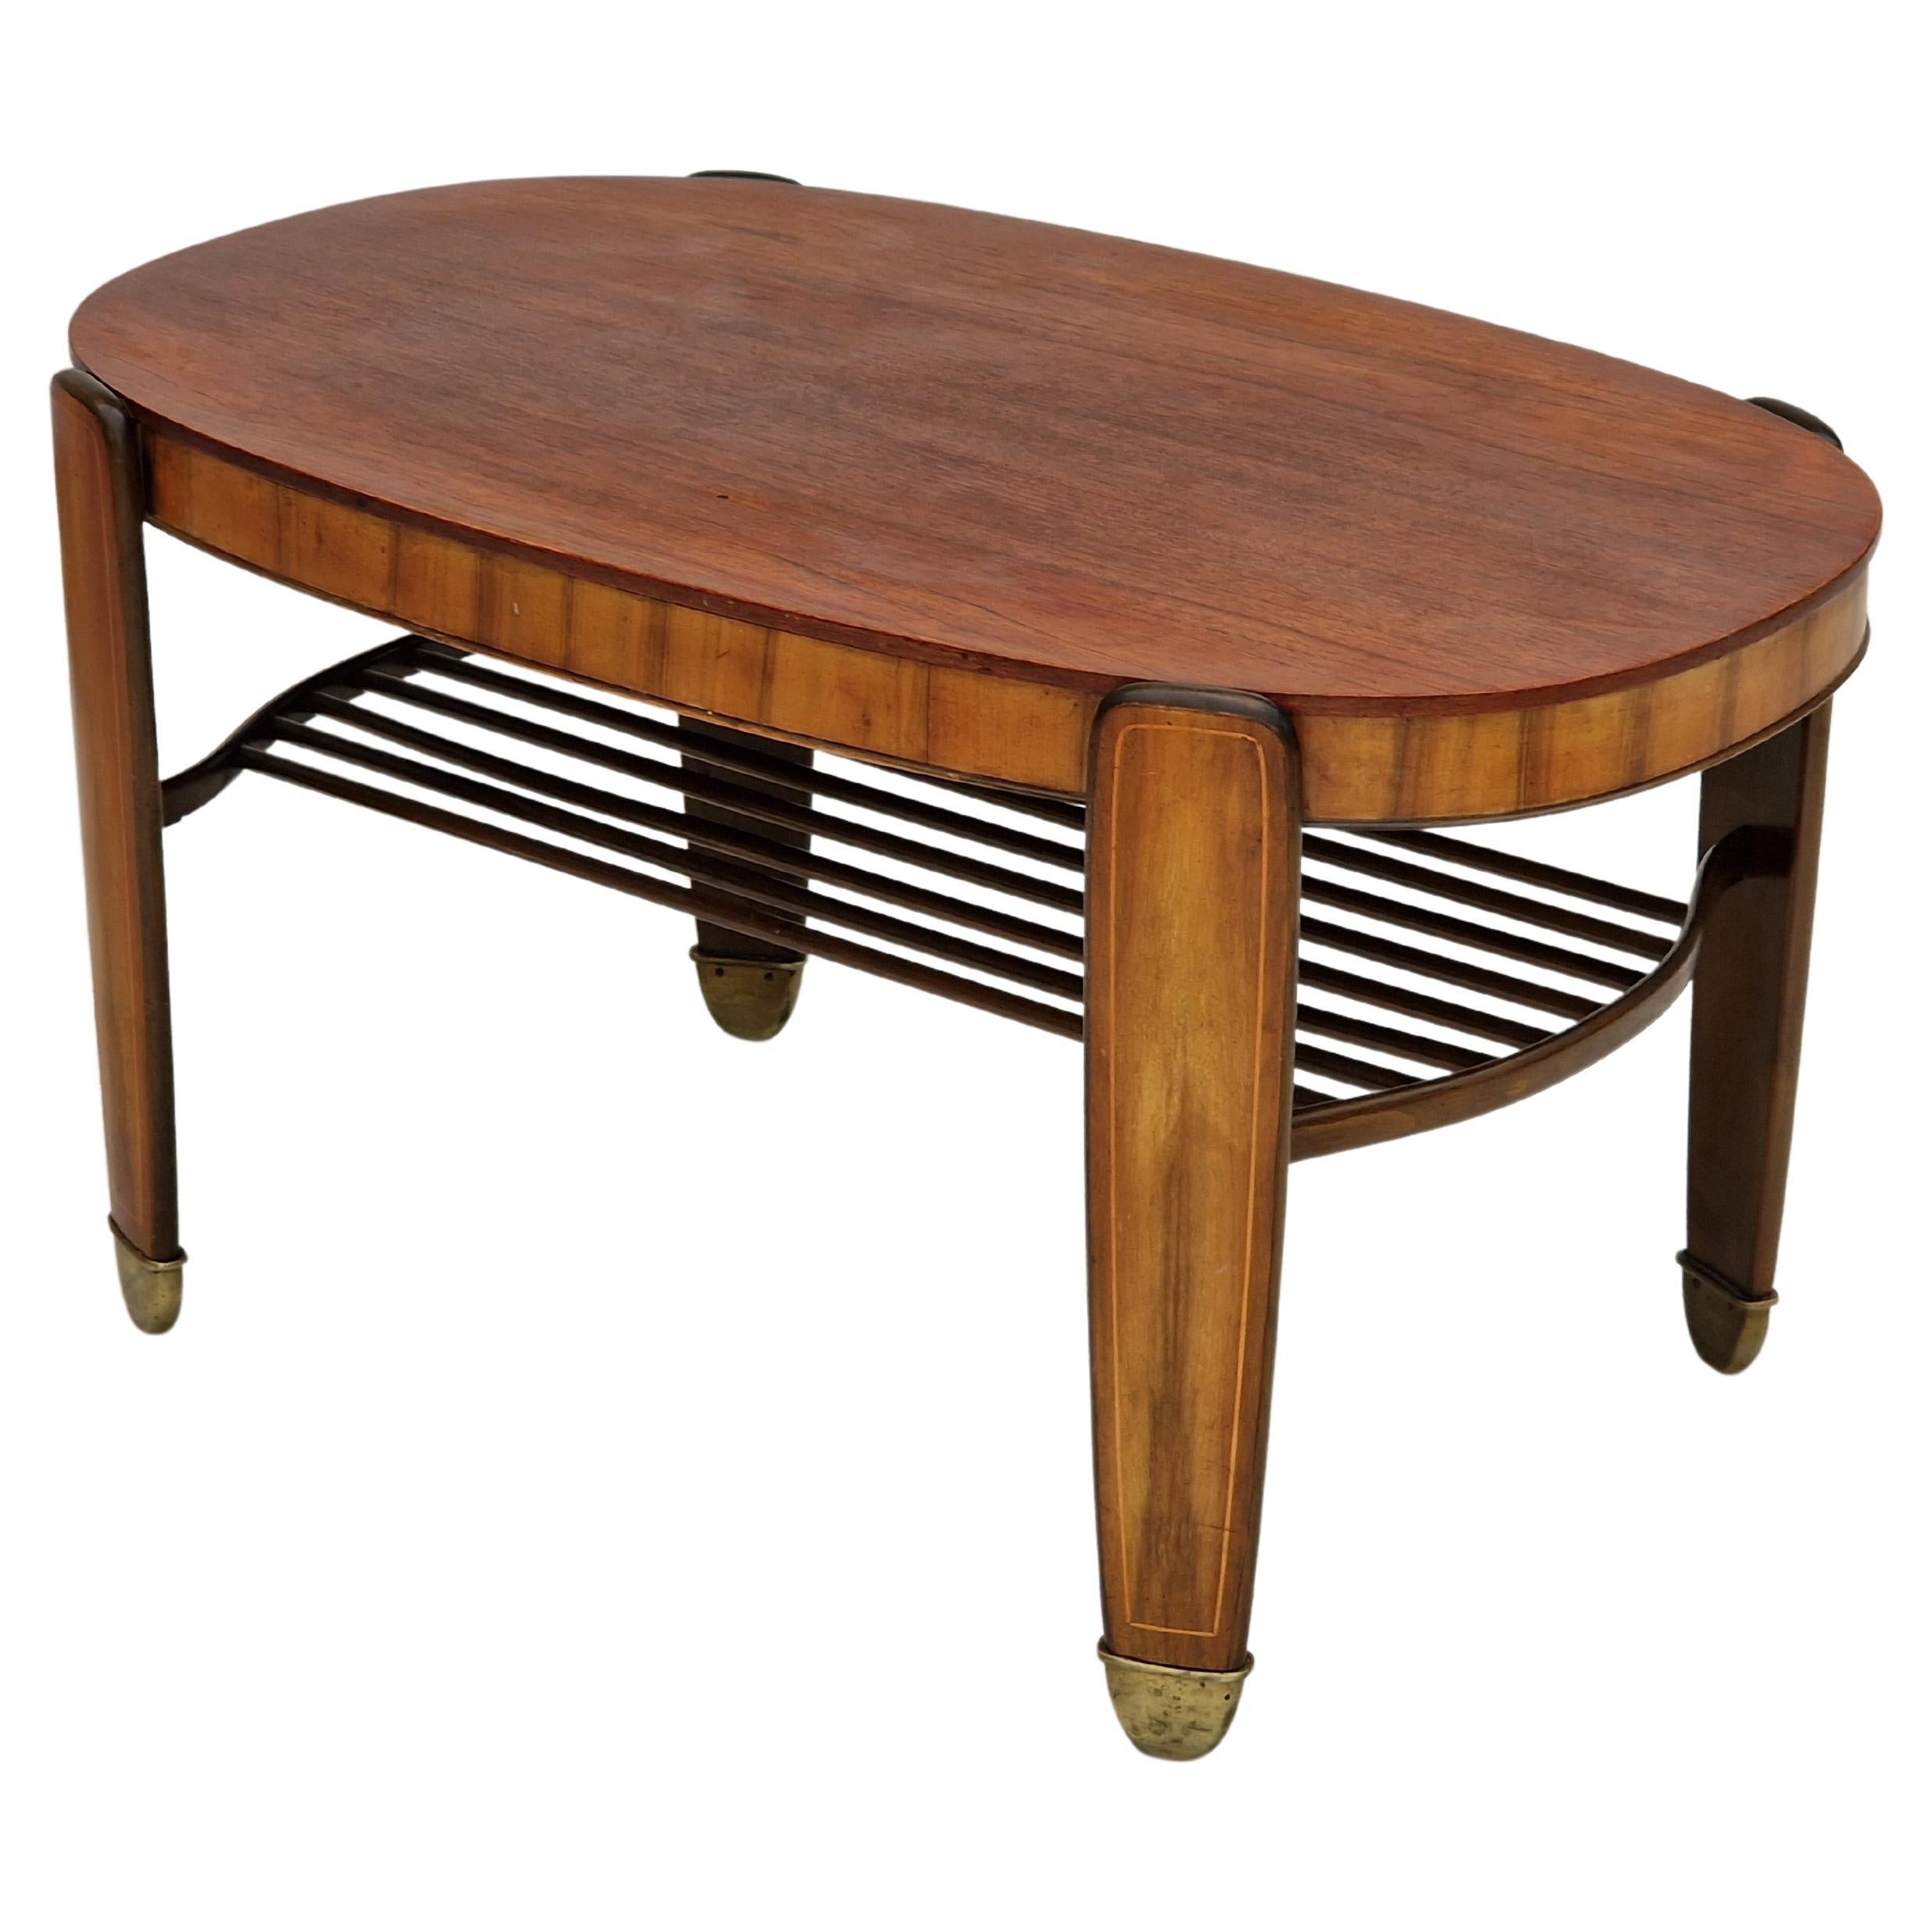 1930s, Danish Design by Edmund Jørgensen, Coffee Table, Original Condition For Sale